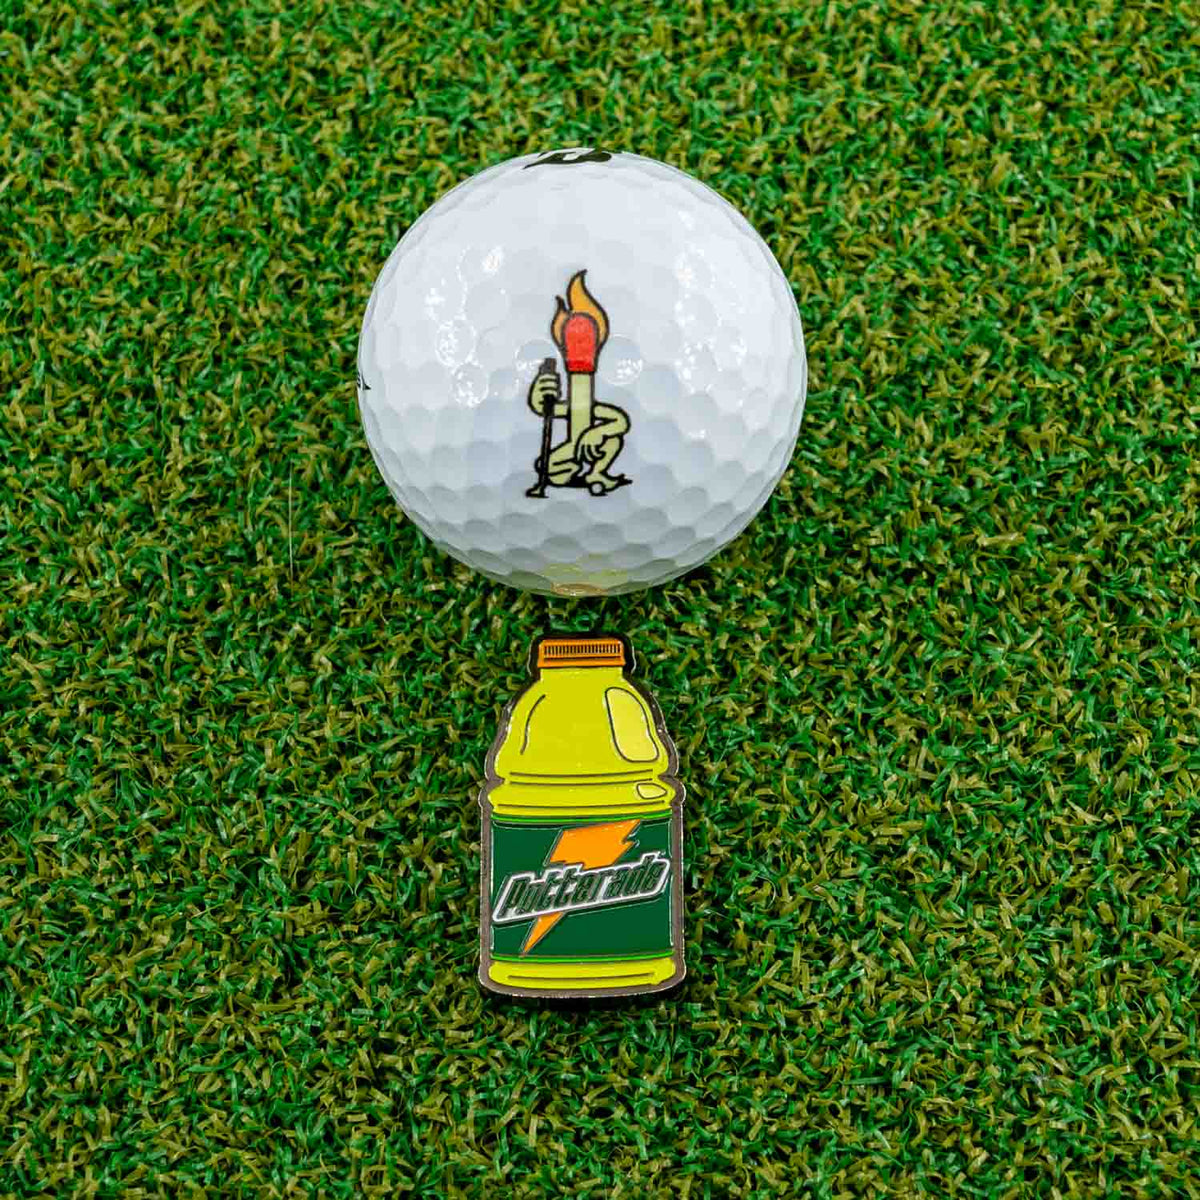 putterade golf ball marker gatorade yellow green lemon lime golf ball grass